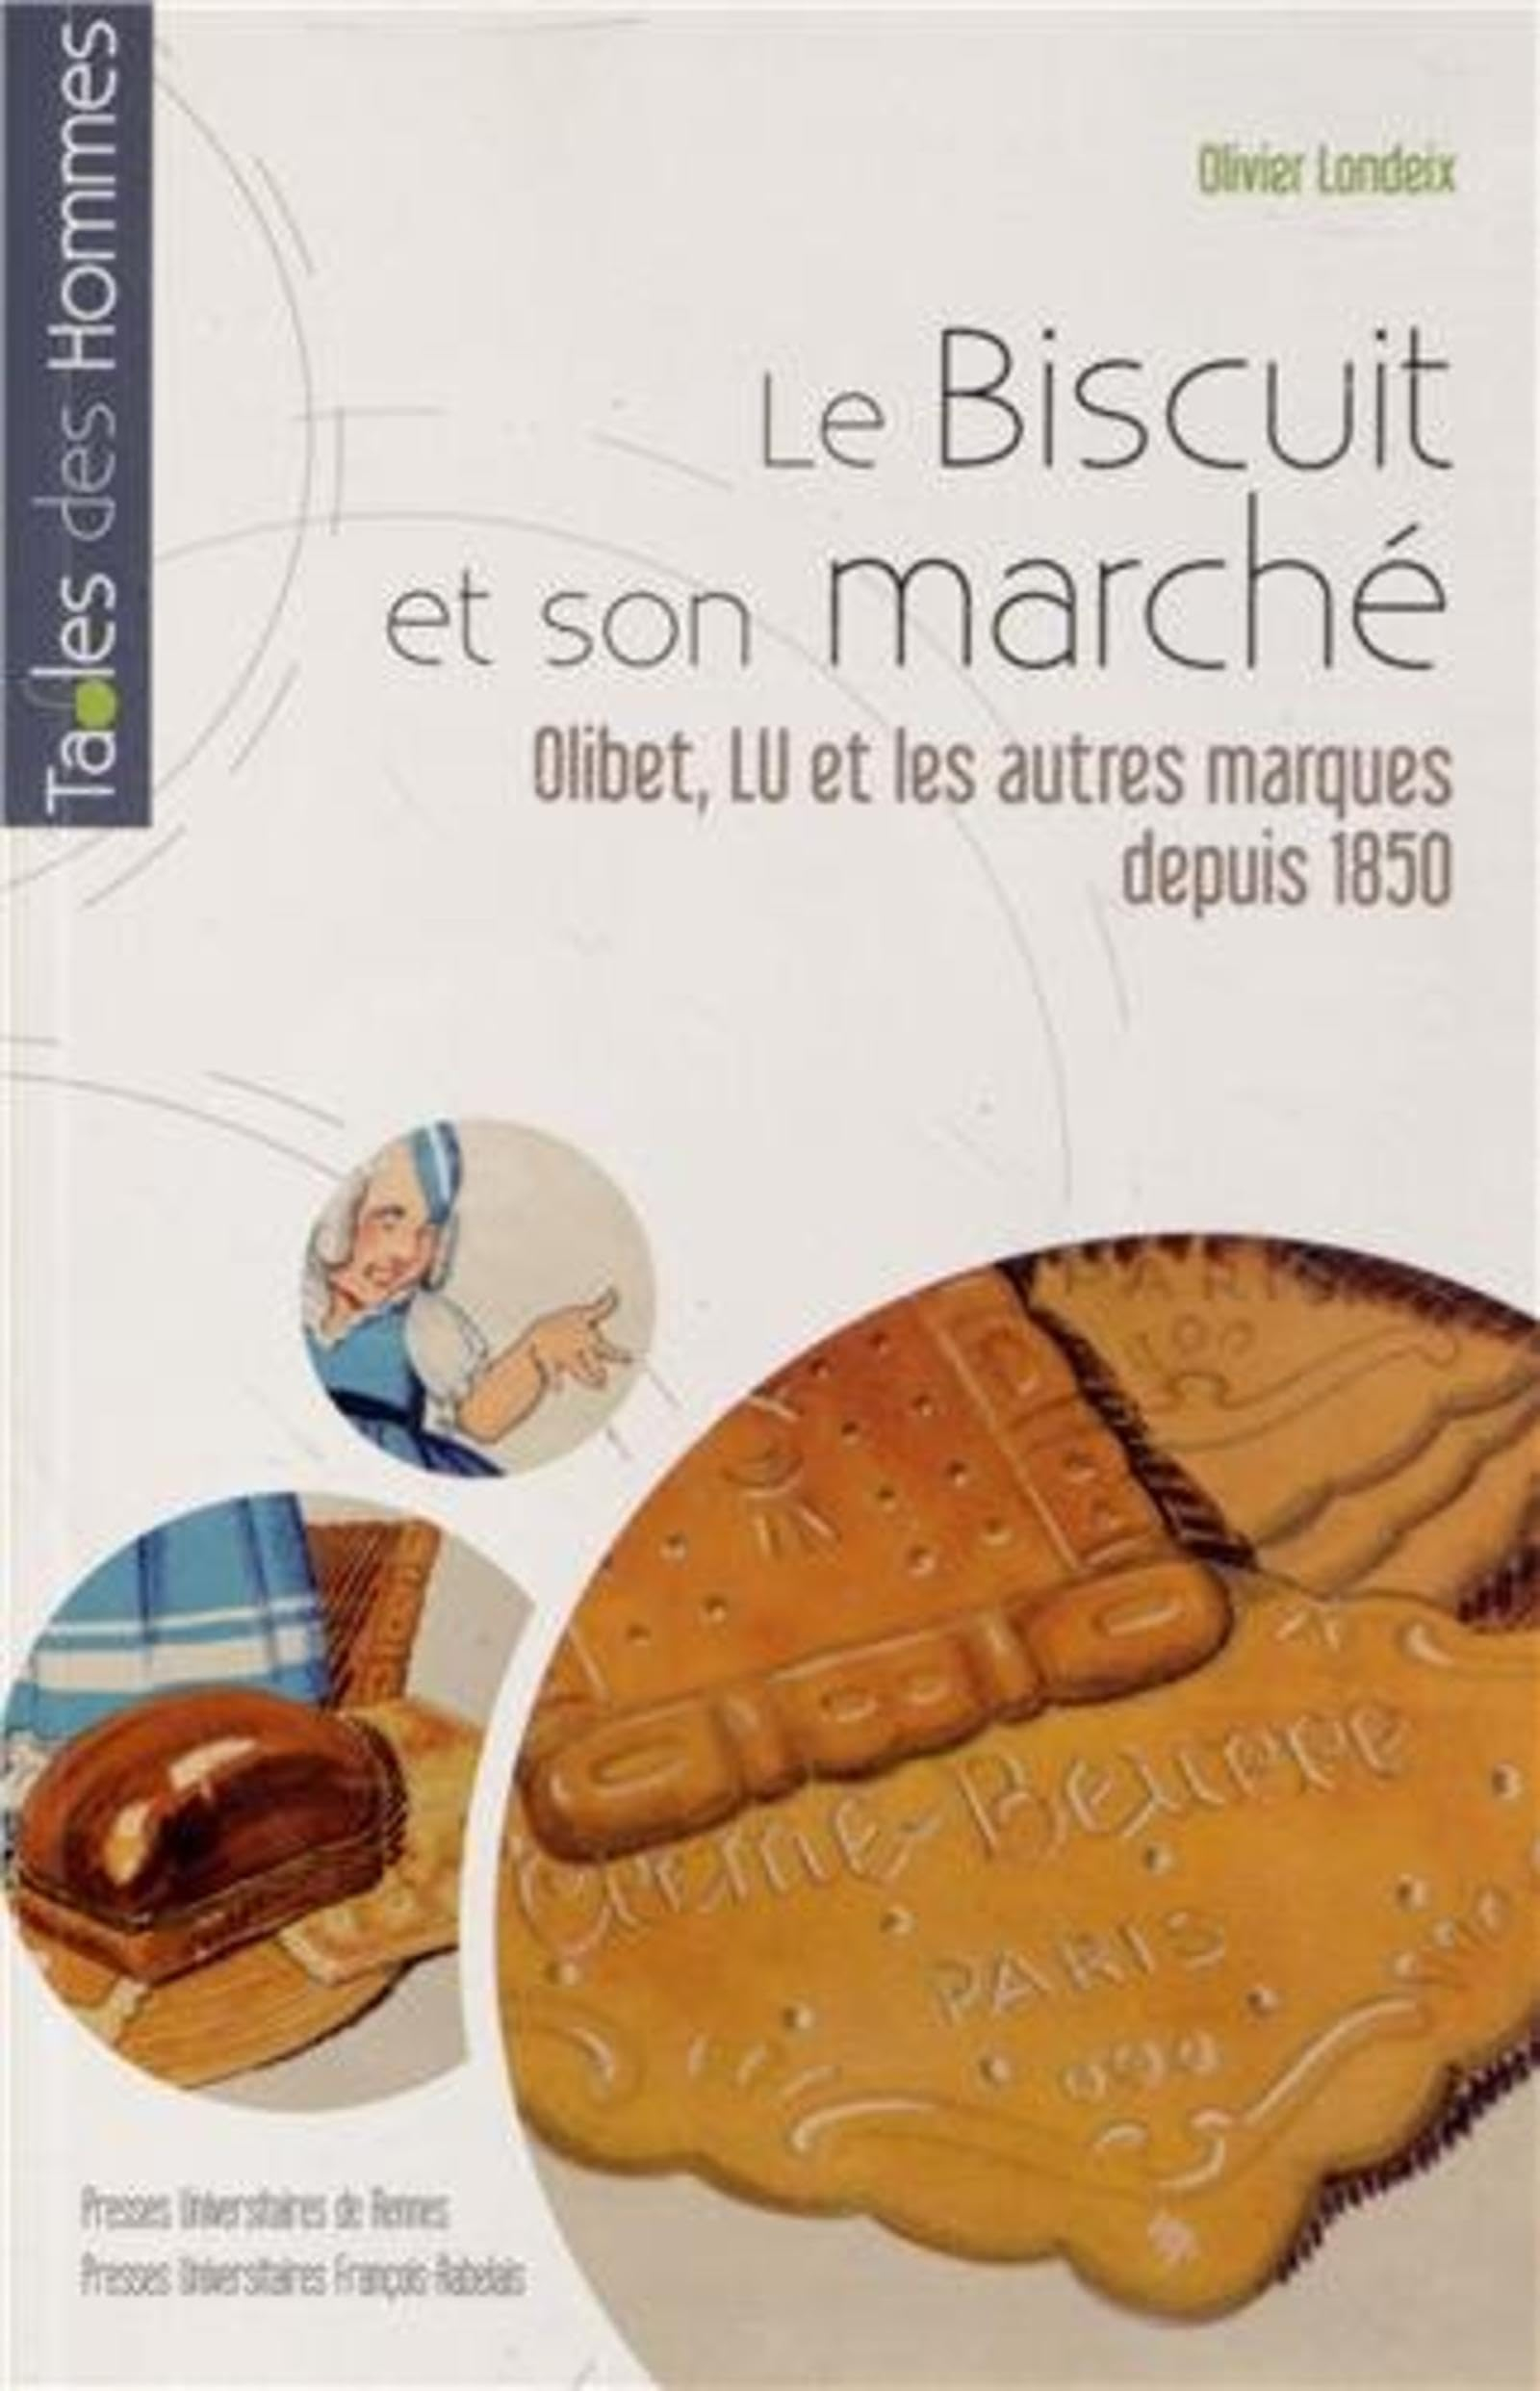 Le biscuit et son marché : Olibet, LU et les autres marques depuis 1850